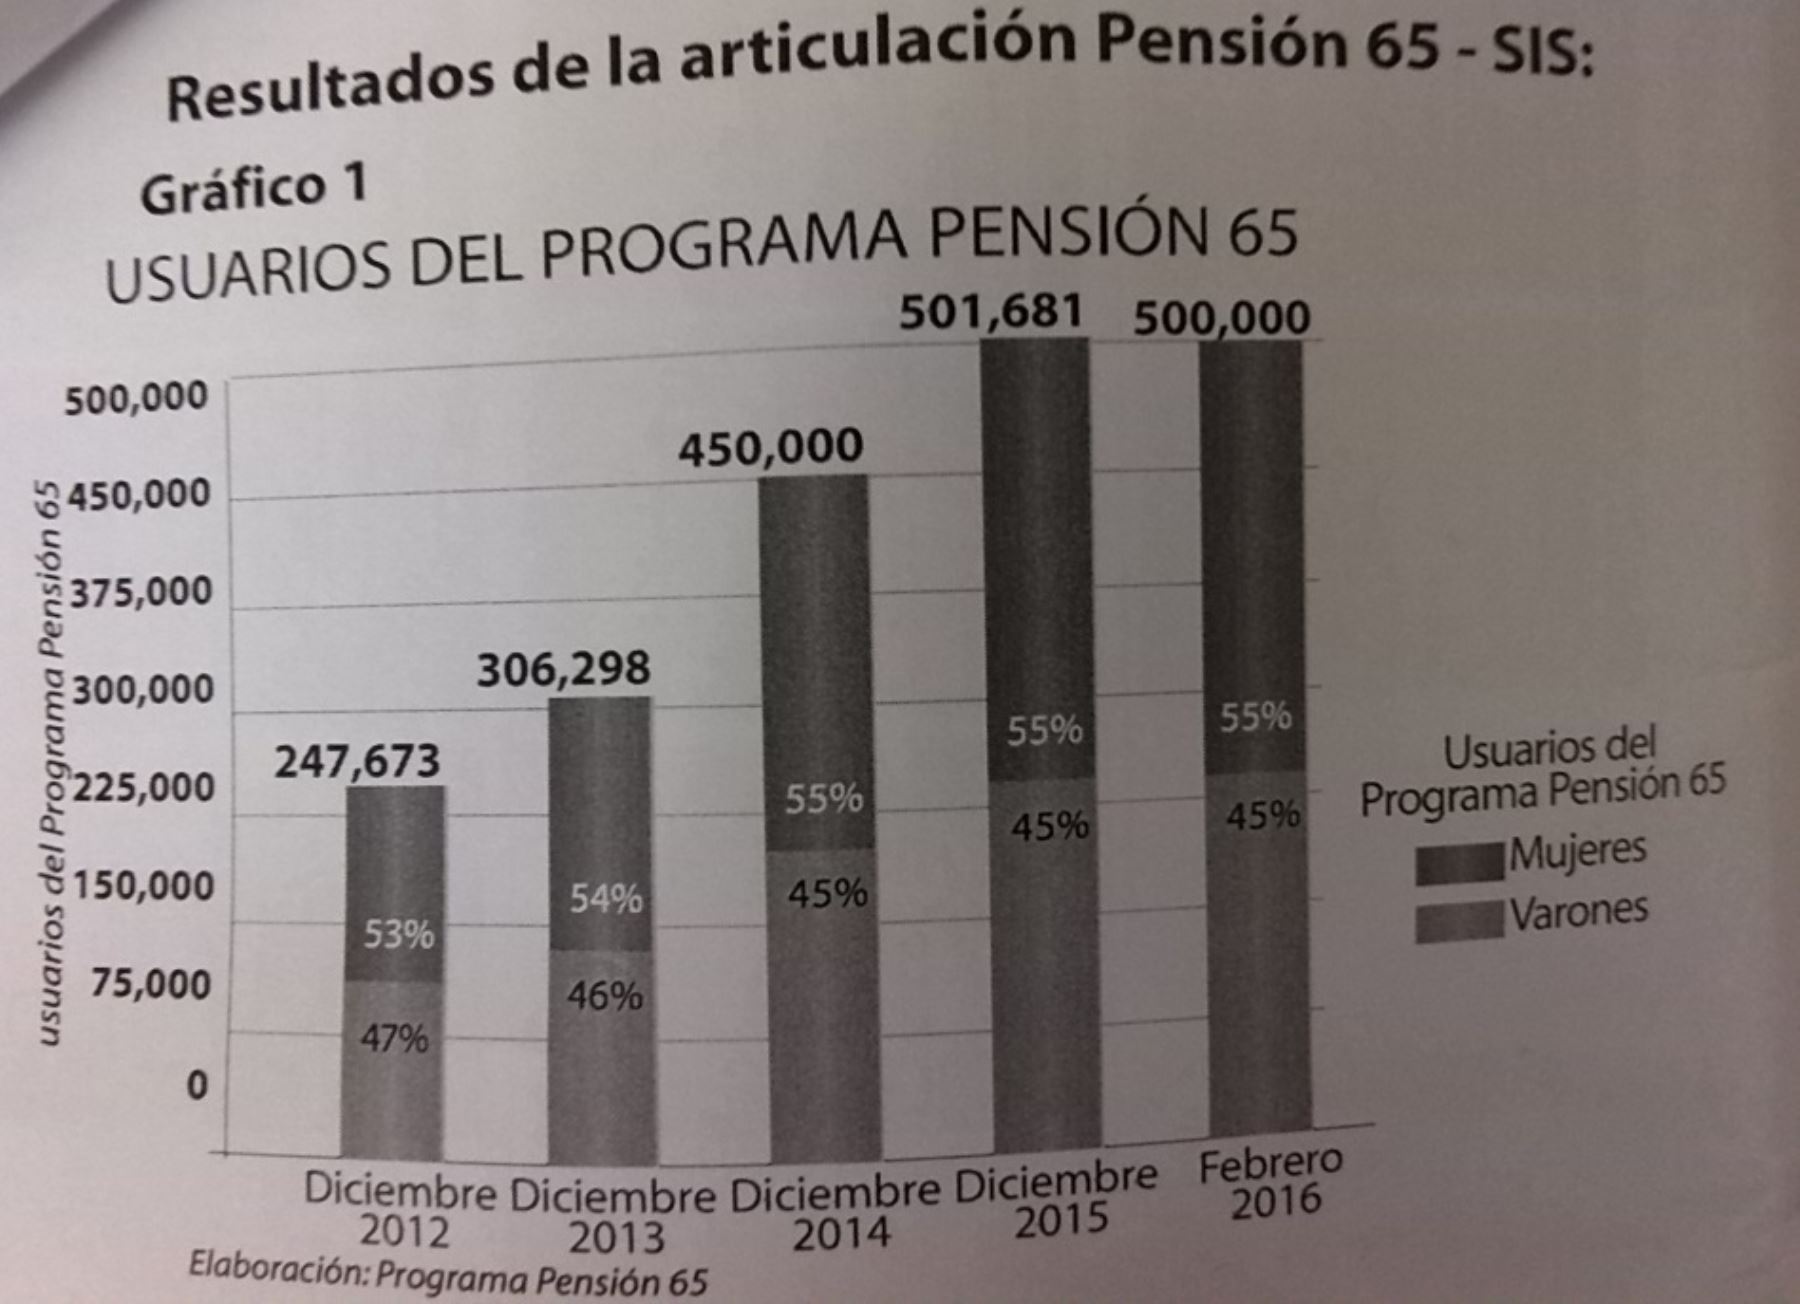 Usuarios del programa Pensión 65 en el período 2012-2015.